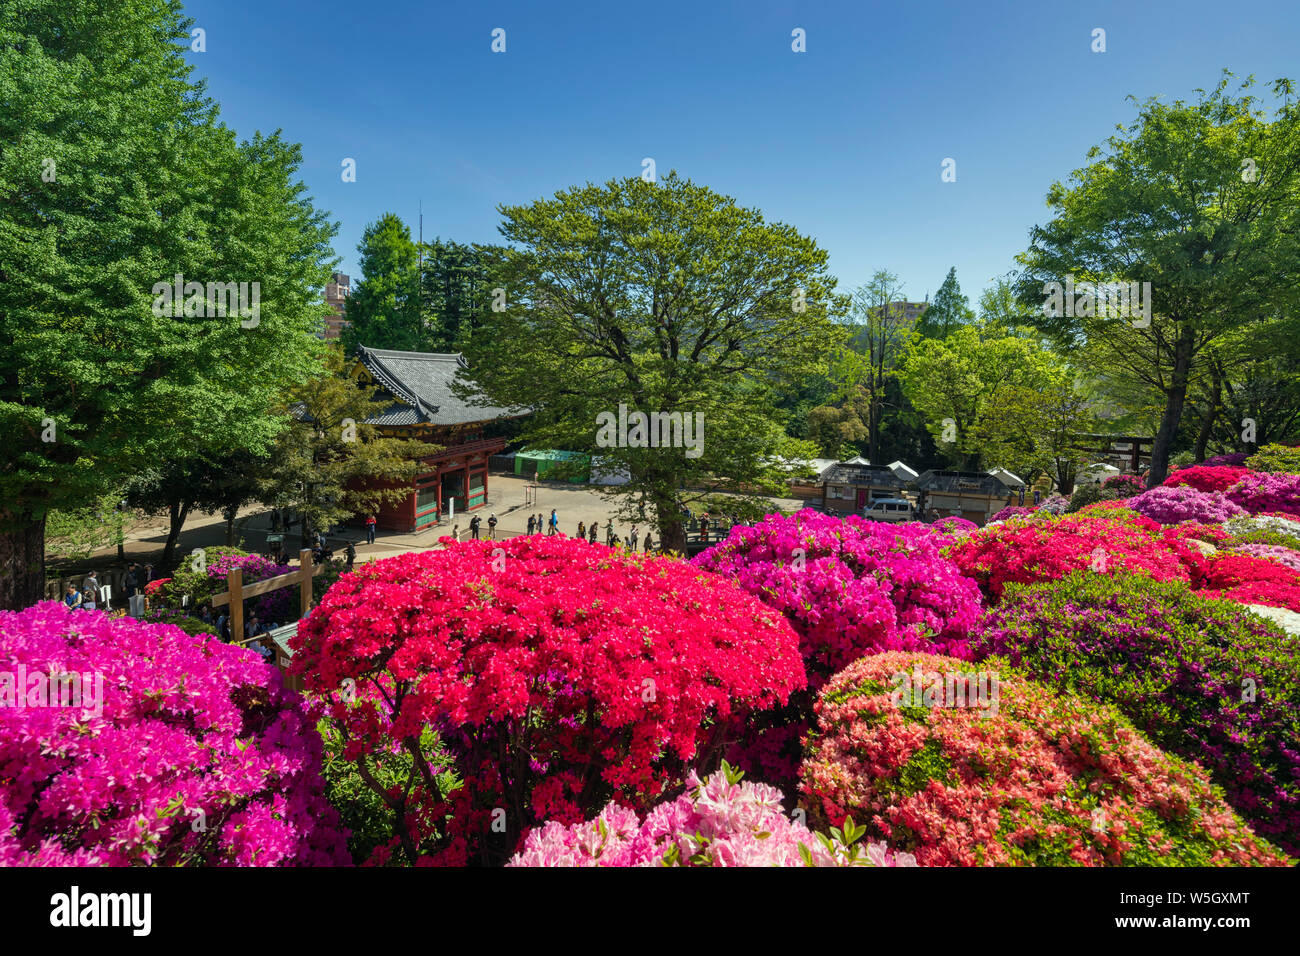 Azaleas (Rhododendron) (Ericaceae family), Nezu Shrine, Tokyo, Japan, Asia Stock Photo